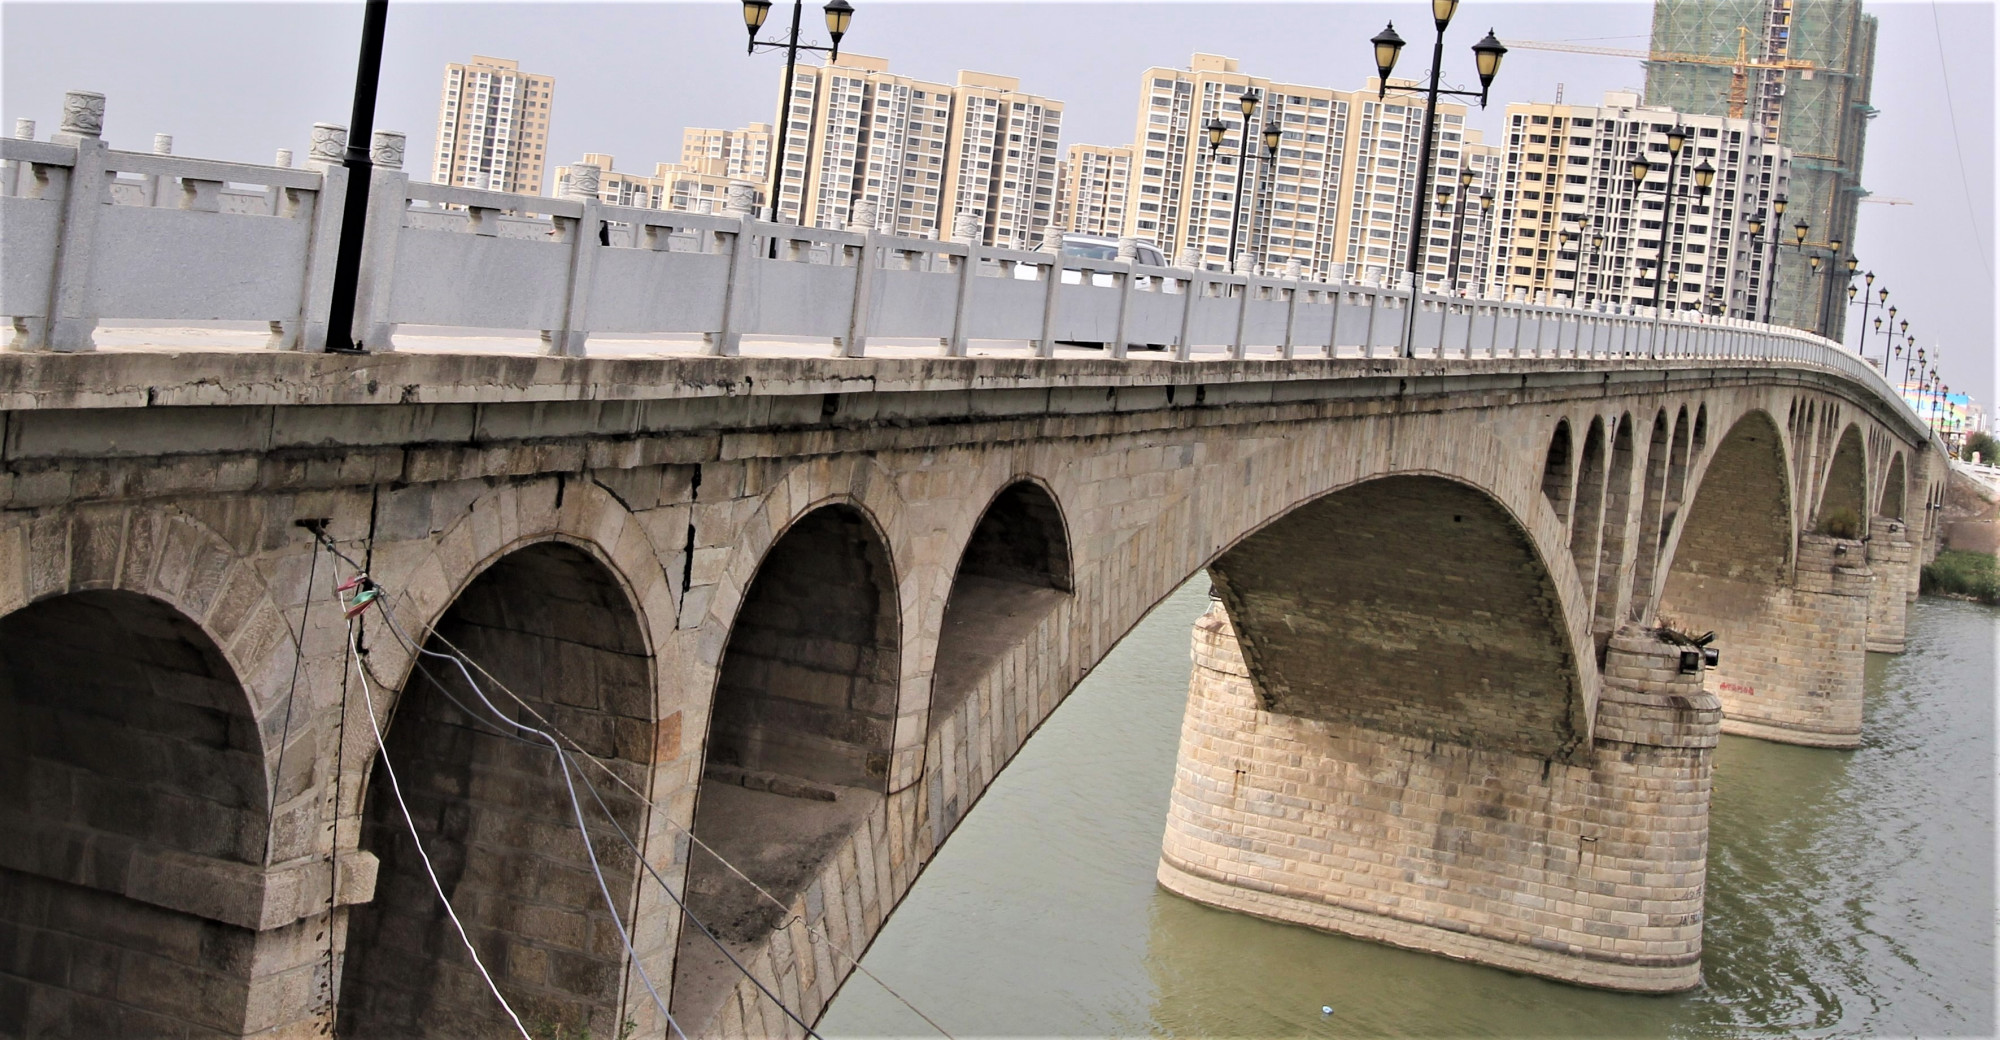 安徽怀远涡河一桥图片